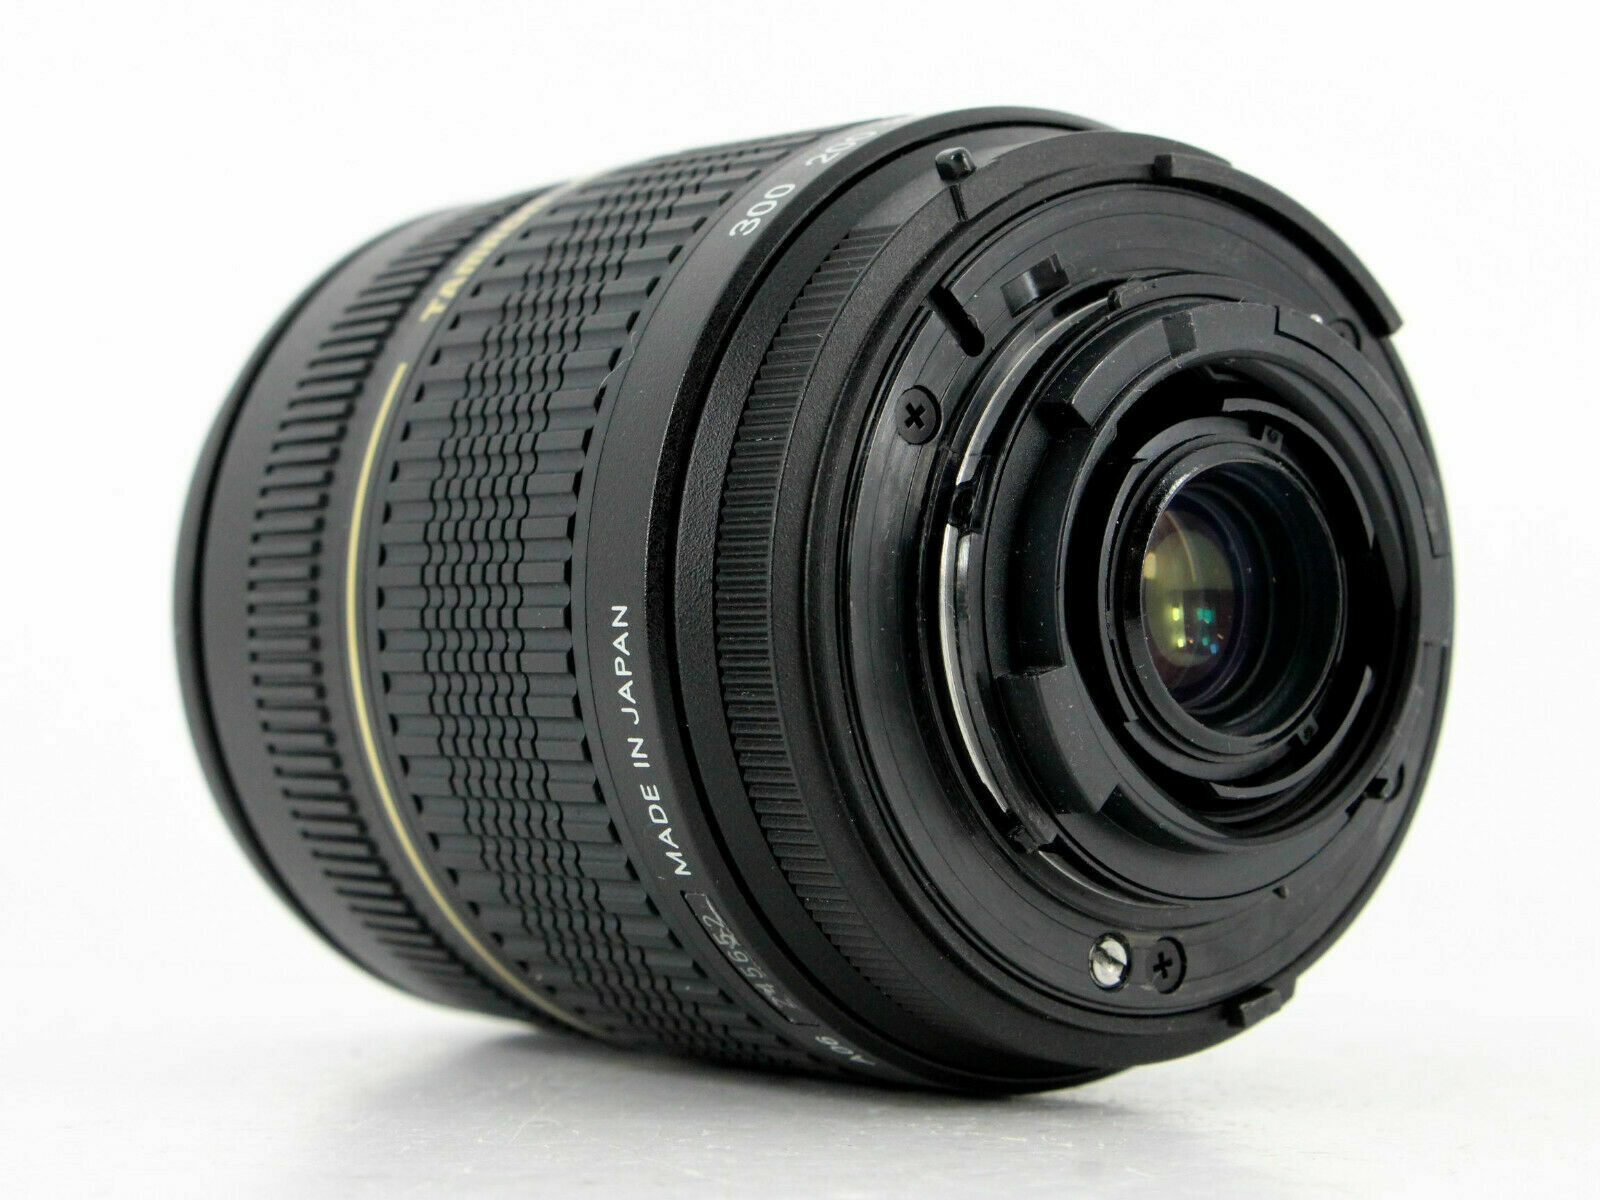 Tamron 28-300mm f/3.5-6.3 XR Di LD Aspherical IF Macro Nikon Fit Lens -  Lenses and Cameras